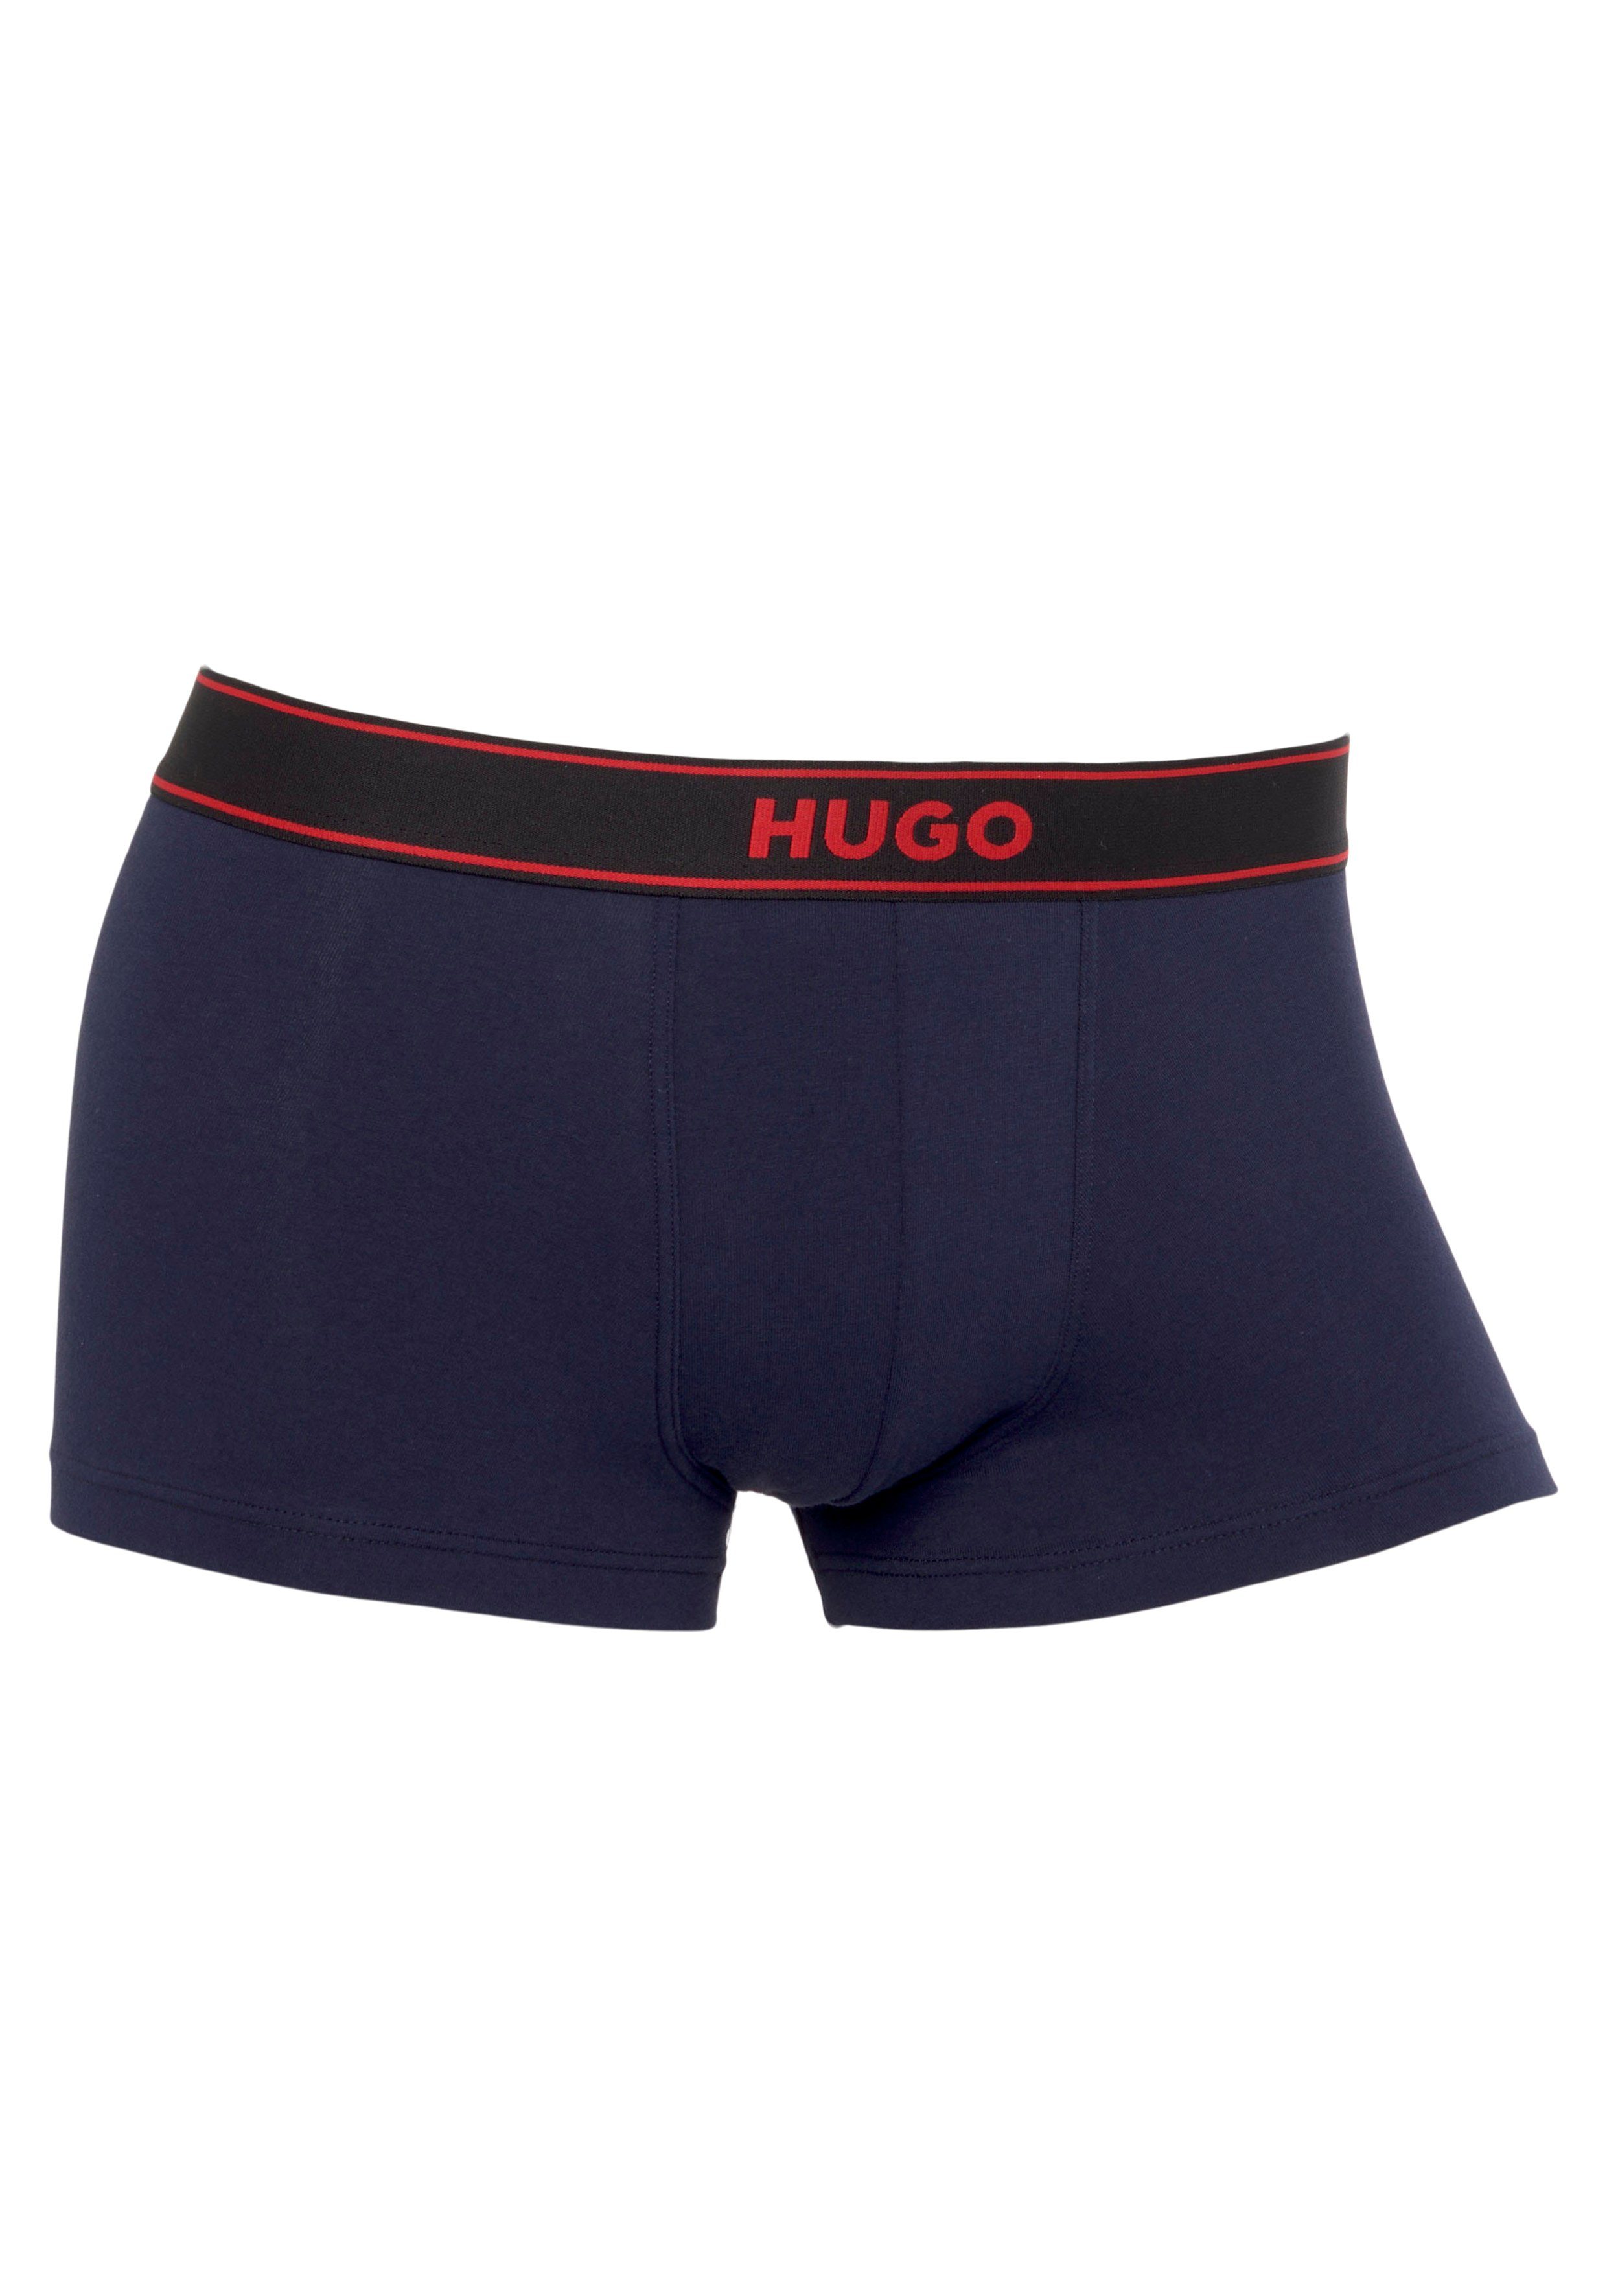 HUGO Label EXCITE mit Navy dem Bund TRUNK auf Trunk HUGO